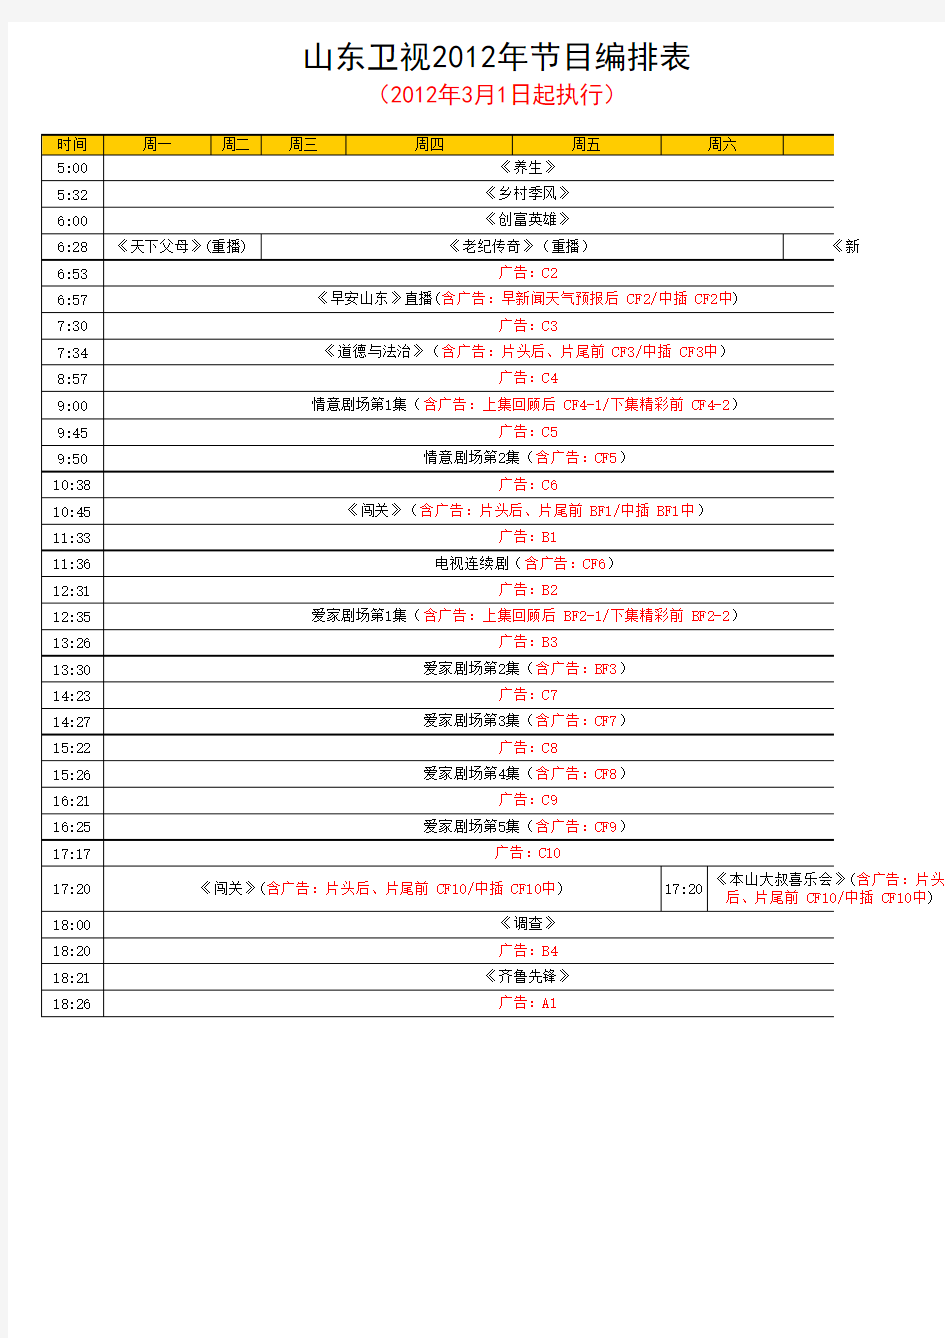 山东卫视2012年节目编排表(3月1日起执行)